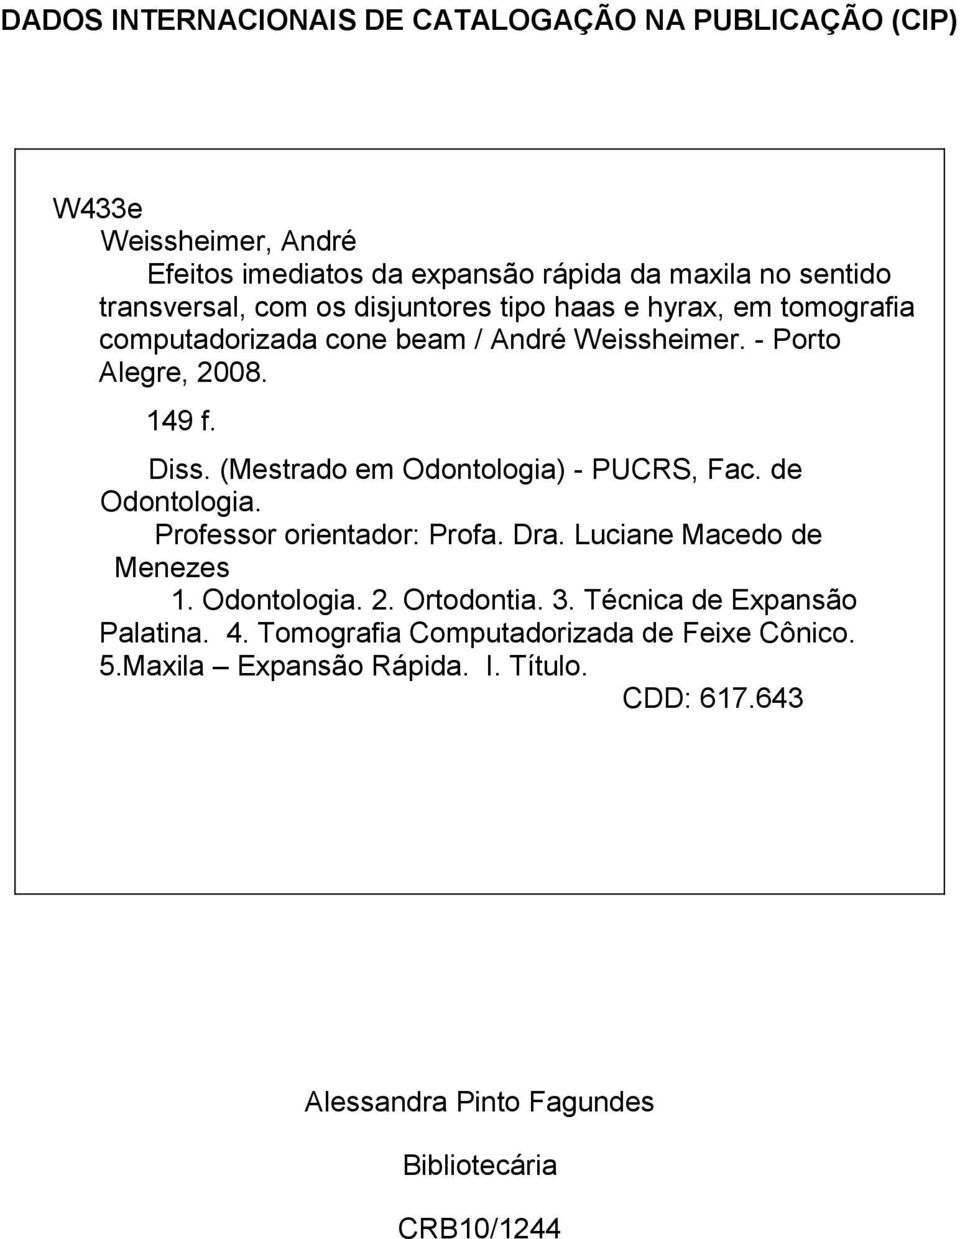 (Mestrado em Odontologia) - PUCRS, Fac. de Odontologia. Professor orientador: Profa. Dra. Luciane Macedo de Menezes 1. Odontologia. 2. Ortodontia. 3.